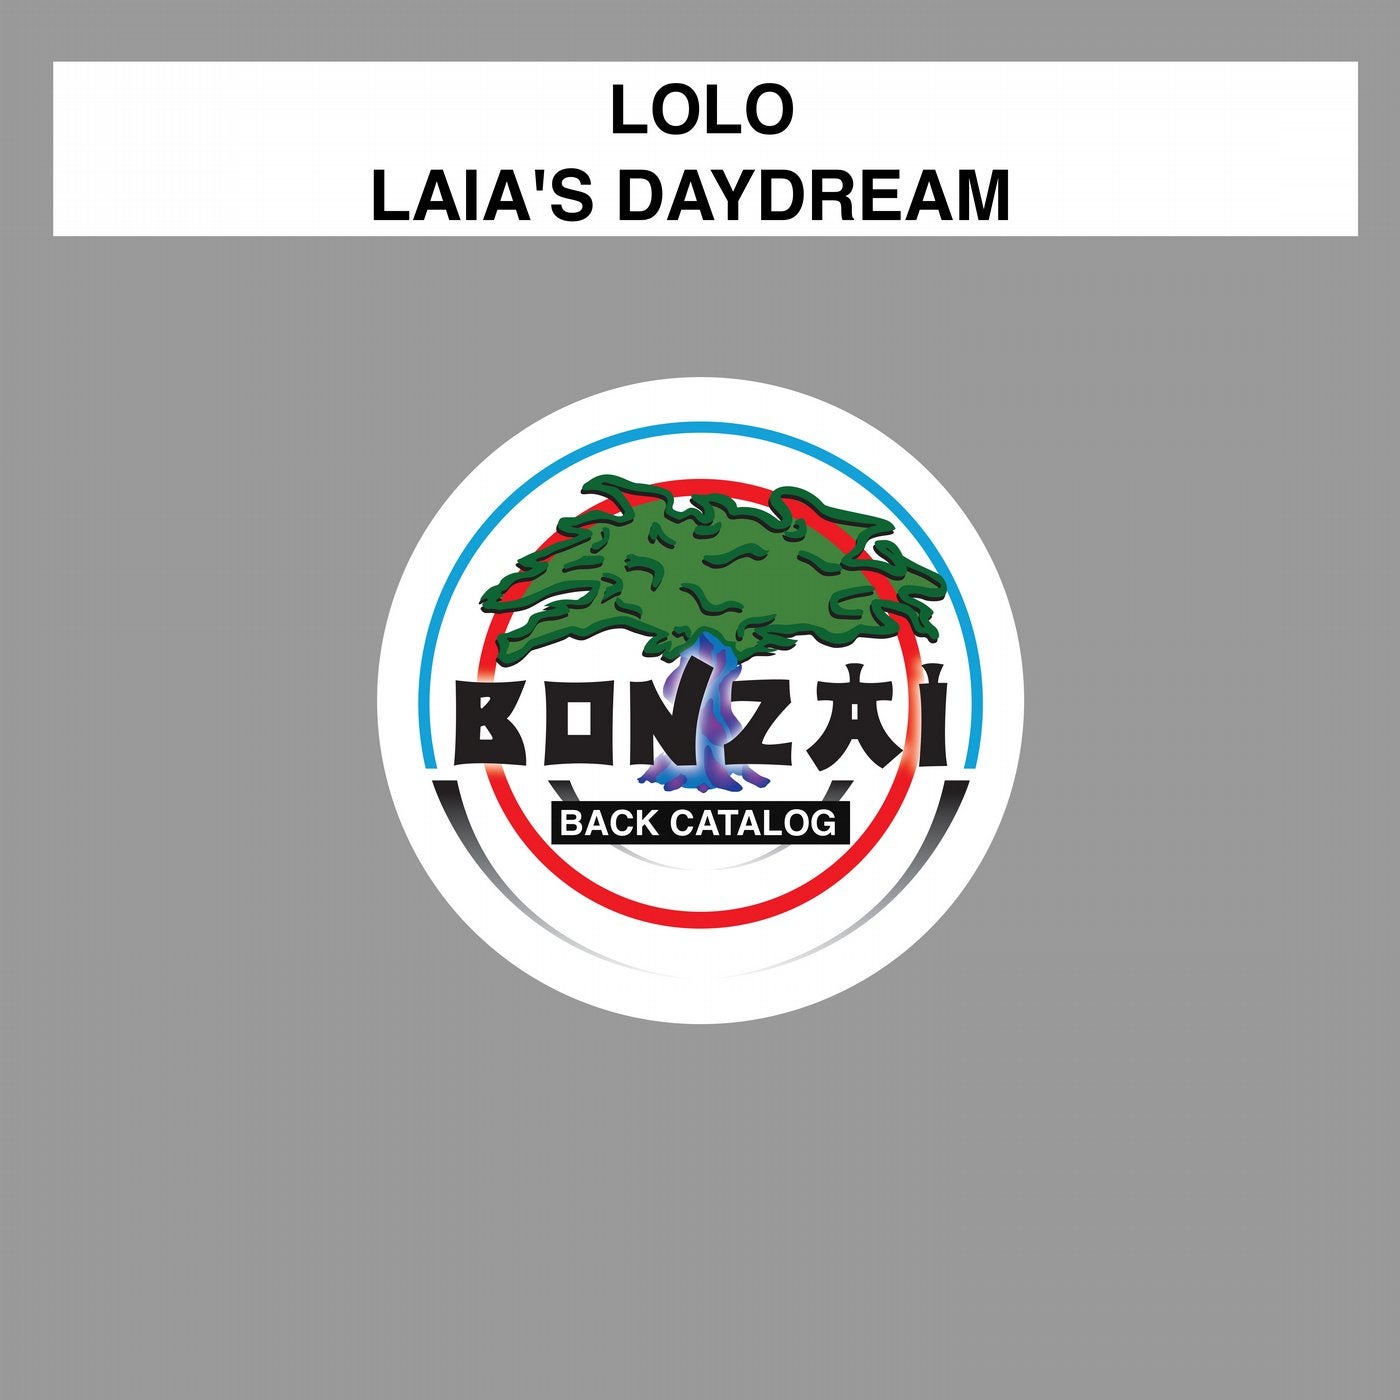 Laia's Daydream